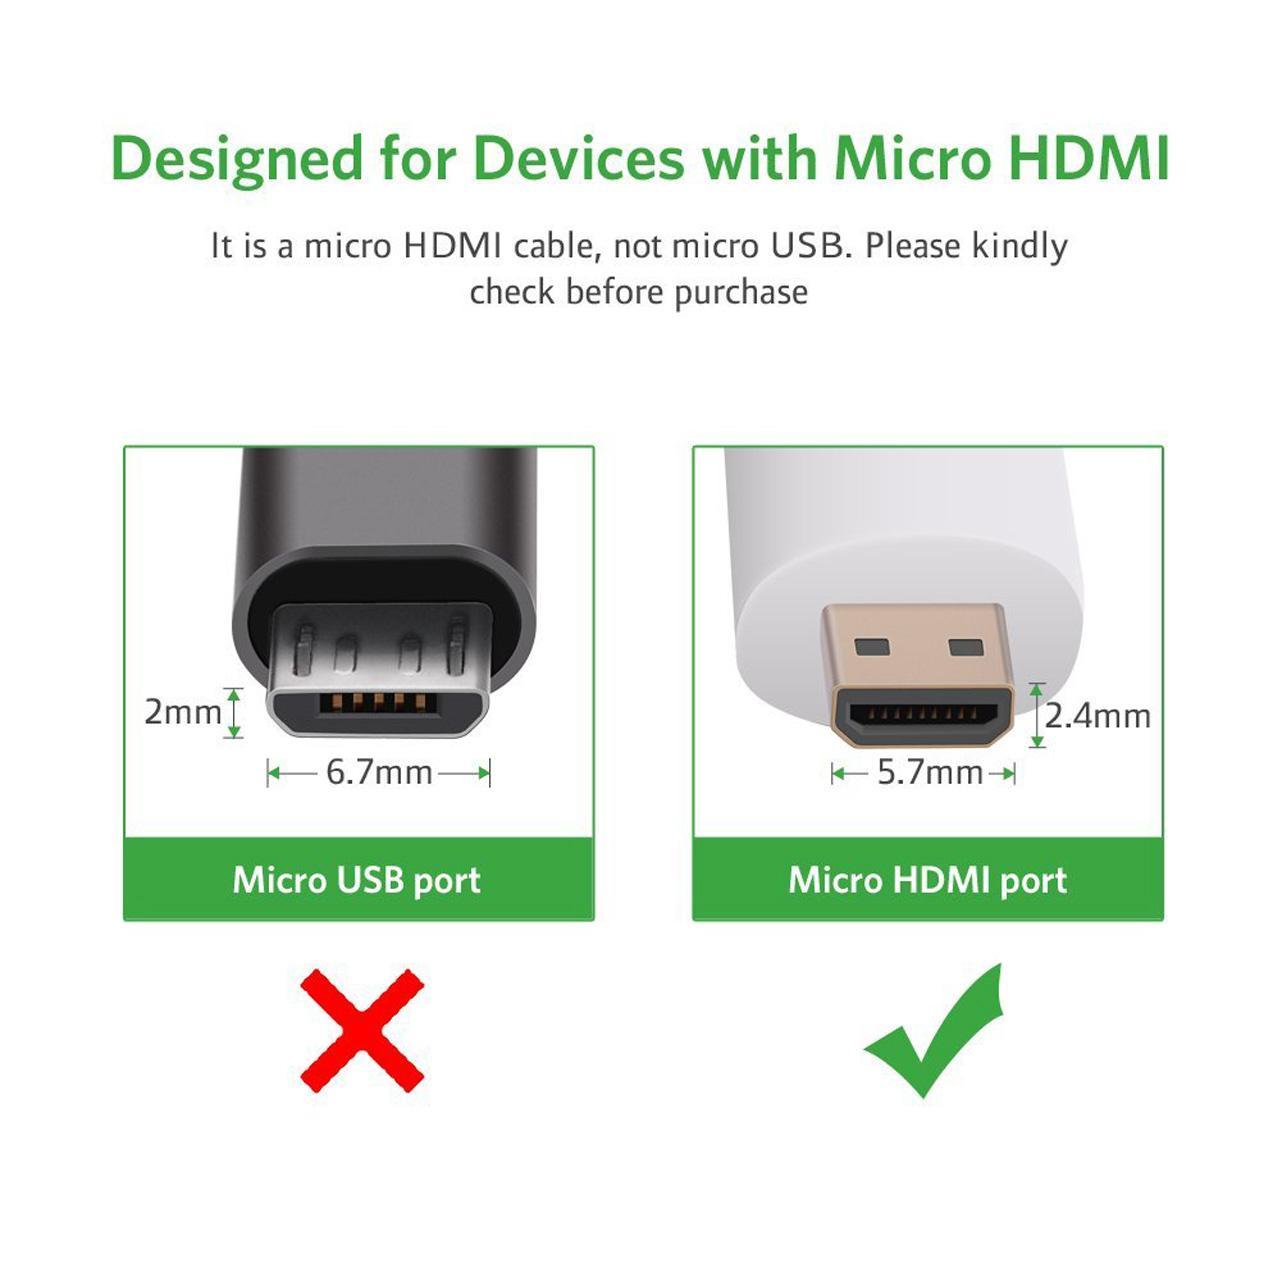 مبدل Micro HDMI به VGA و HDMI